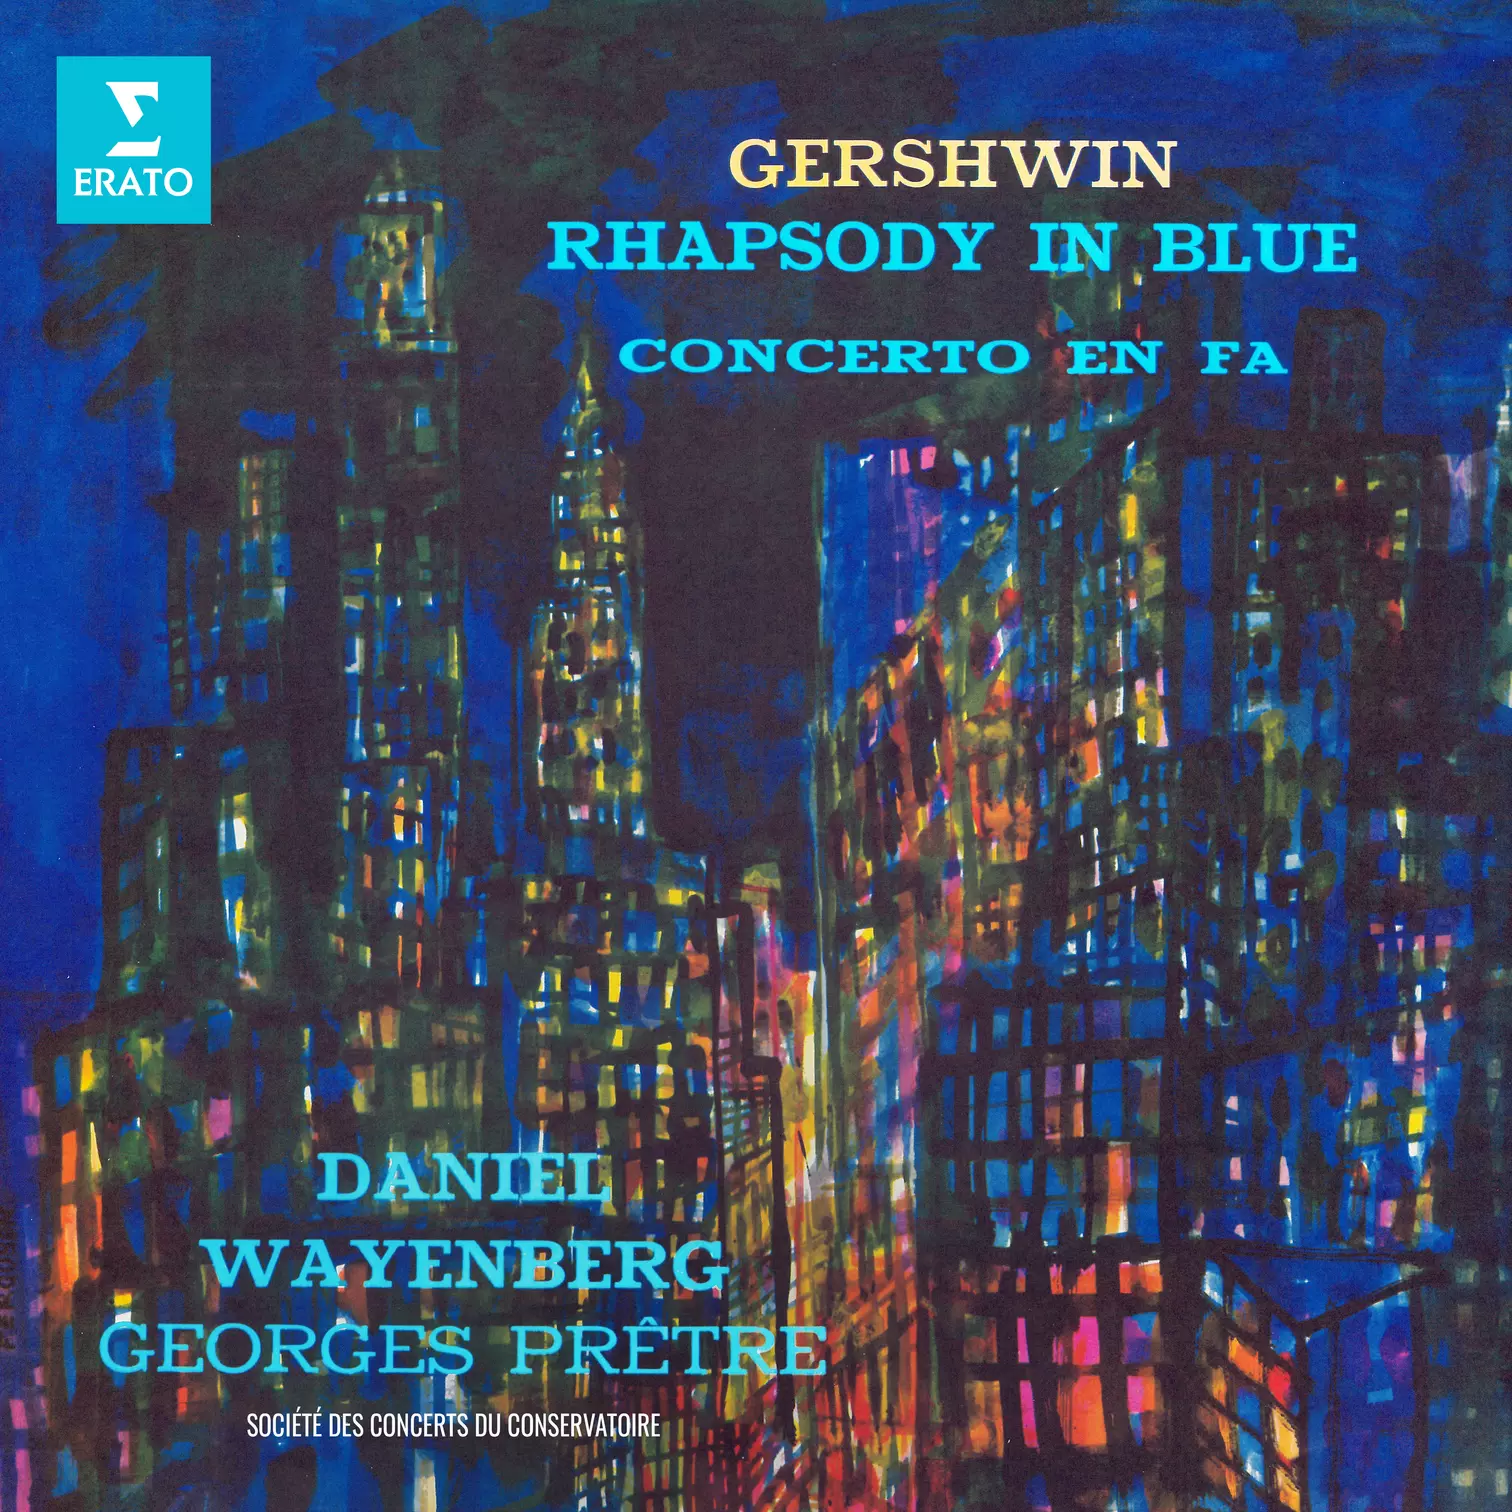 Gershwin: Rhapsody in Blue & Concerto en fa